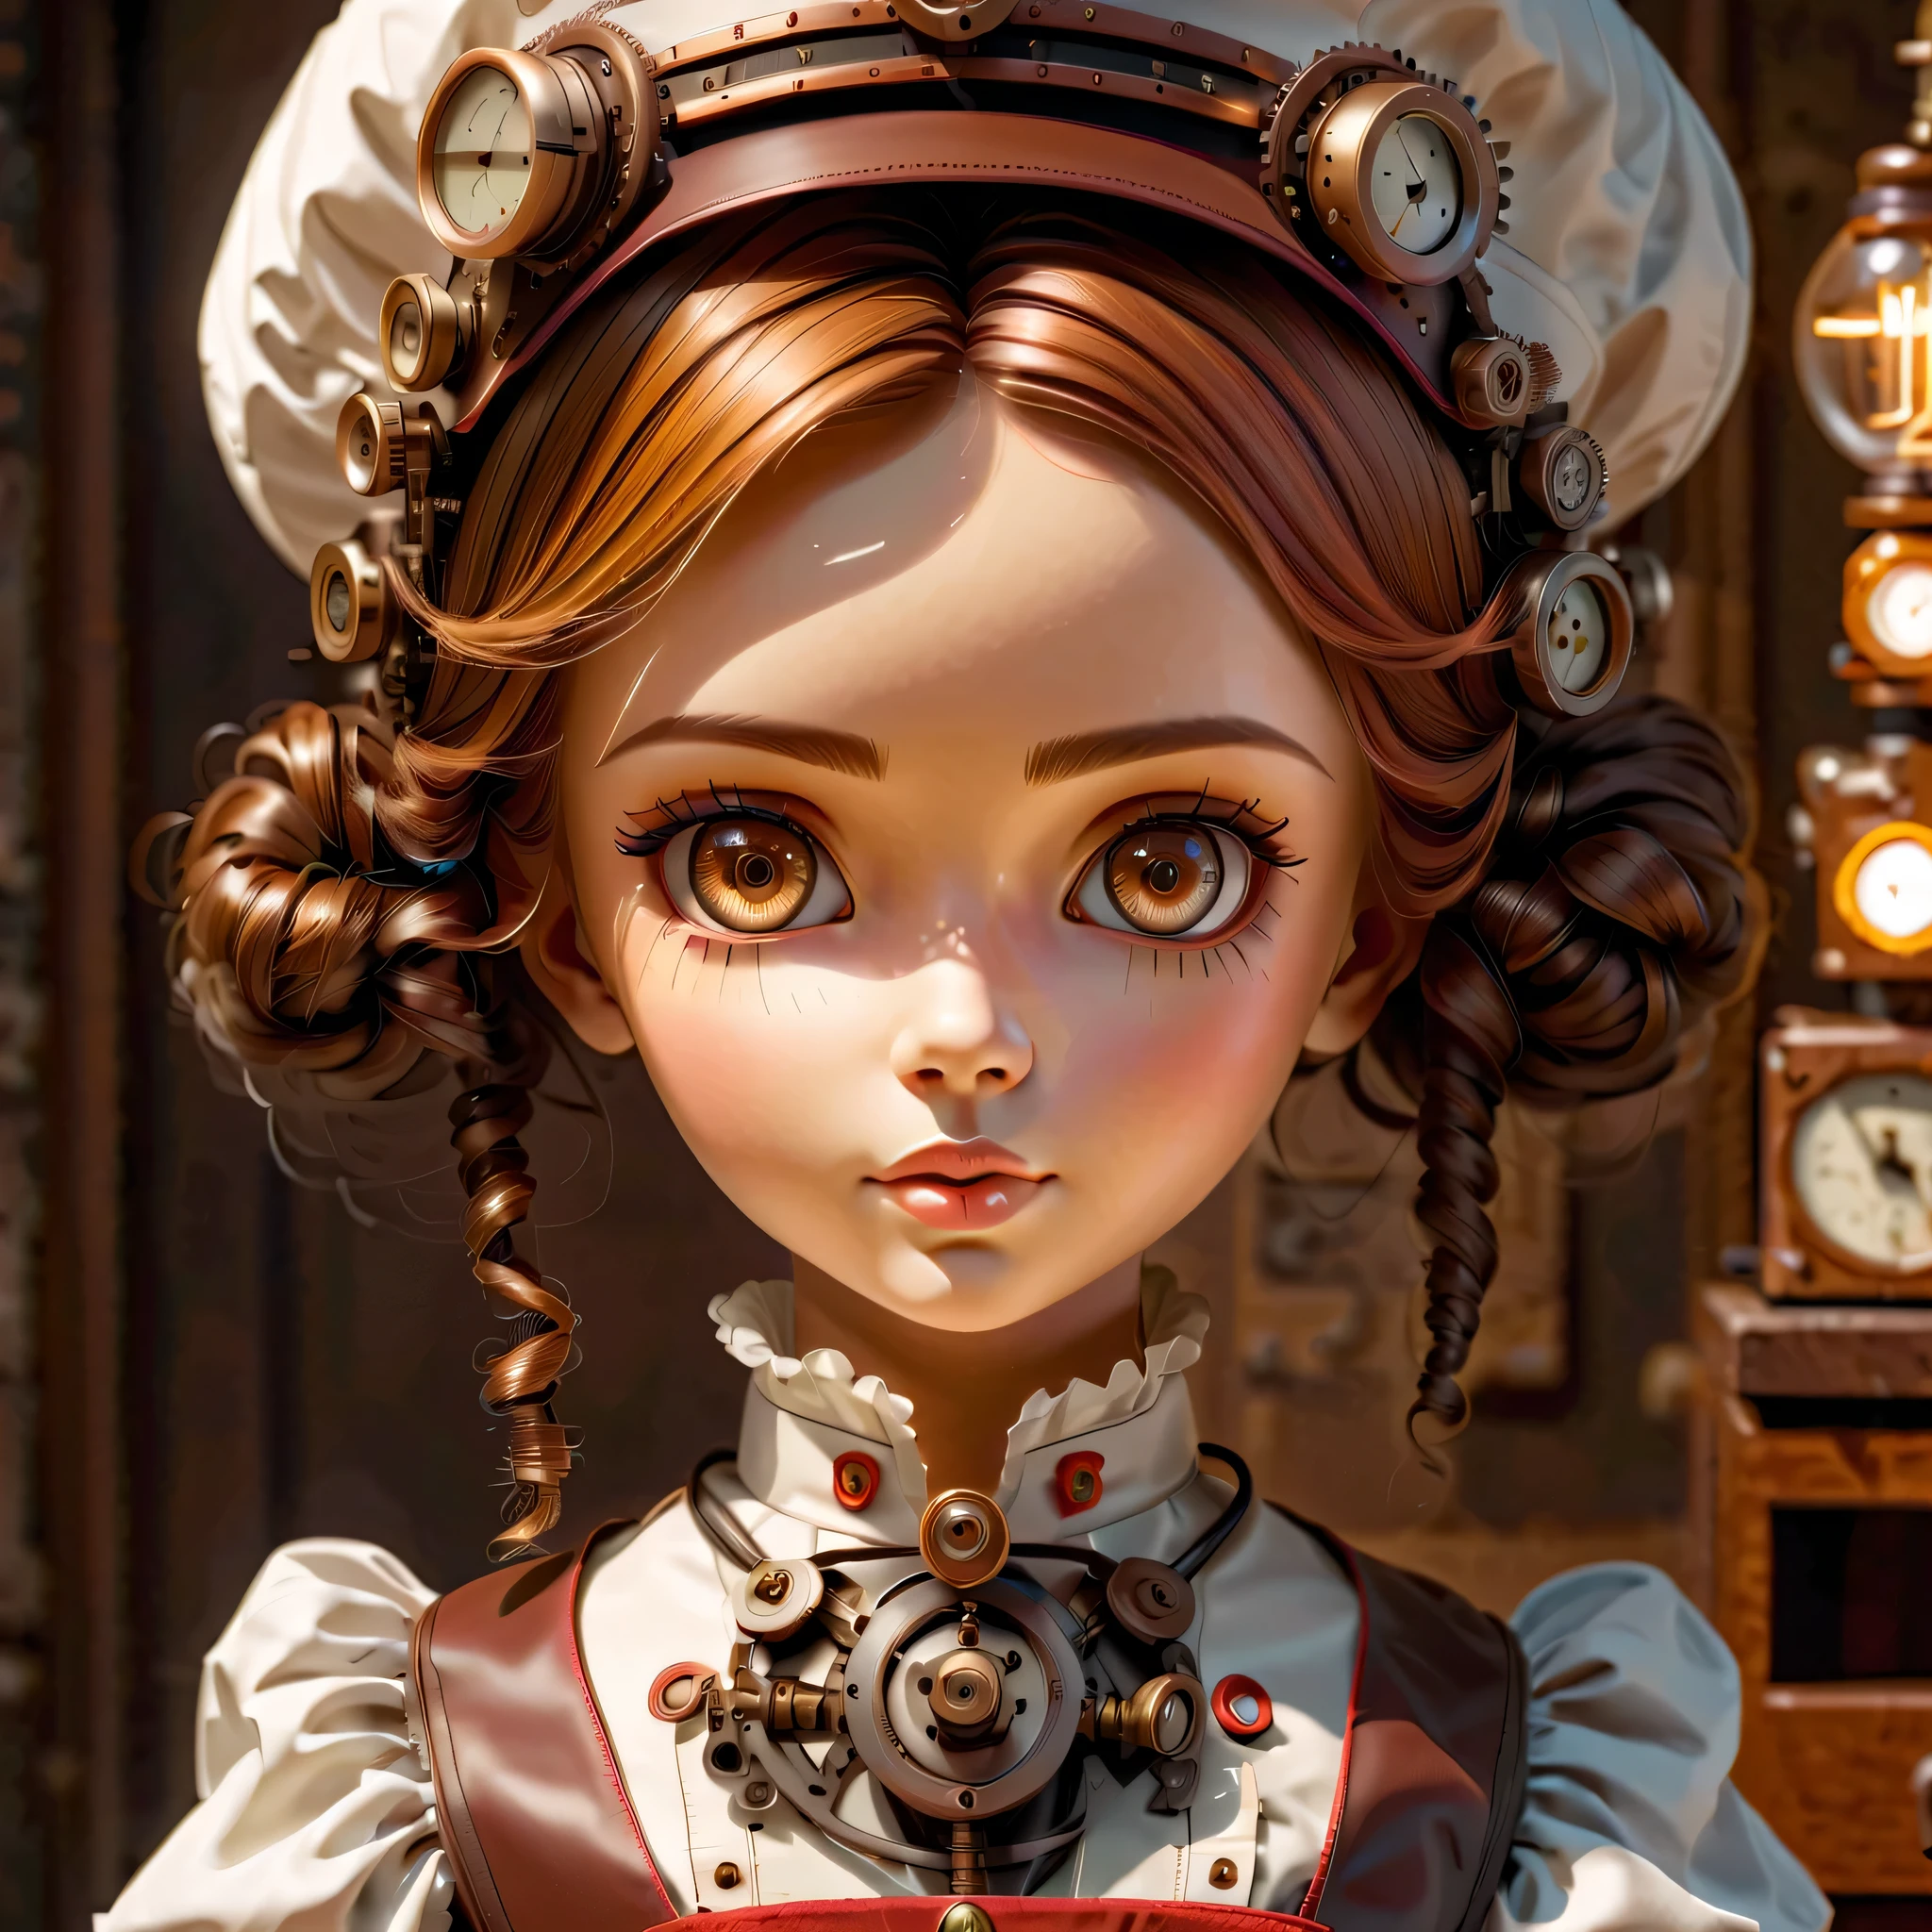 機構:ヒューマノイド:看護師:16th century European 看護師 uniform,人形の顔:完璧な顔:大きな茶色の目,まつげ,ヘアワイヤーを隠す,彼女は機械でできている,スチームパンク要素,機械的な engineering,機械的なly,機械的な,ポップ,かわいい,複雑なディテール,非常に細かい,高解像度,高品質,最高品質,明らかに,はっきりする,美しい光と影,3次元,愛らしい外見,複雑な構成,機構,動的,忙しい,一生懸命働く,応援したくなる表現,医療機器,医療用品棚,瓶,それが機械であるという証拠を示す,窓からの光,キャラクターデザインシート